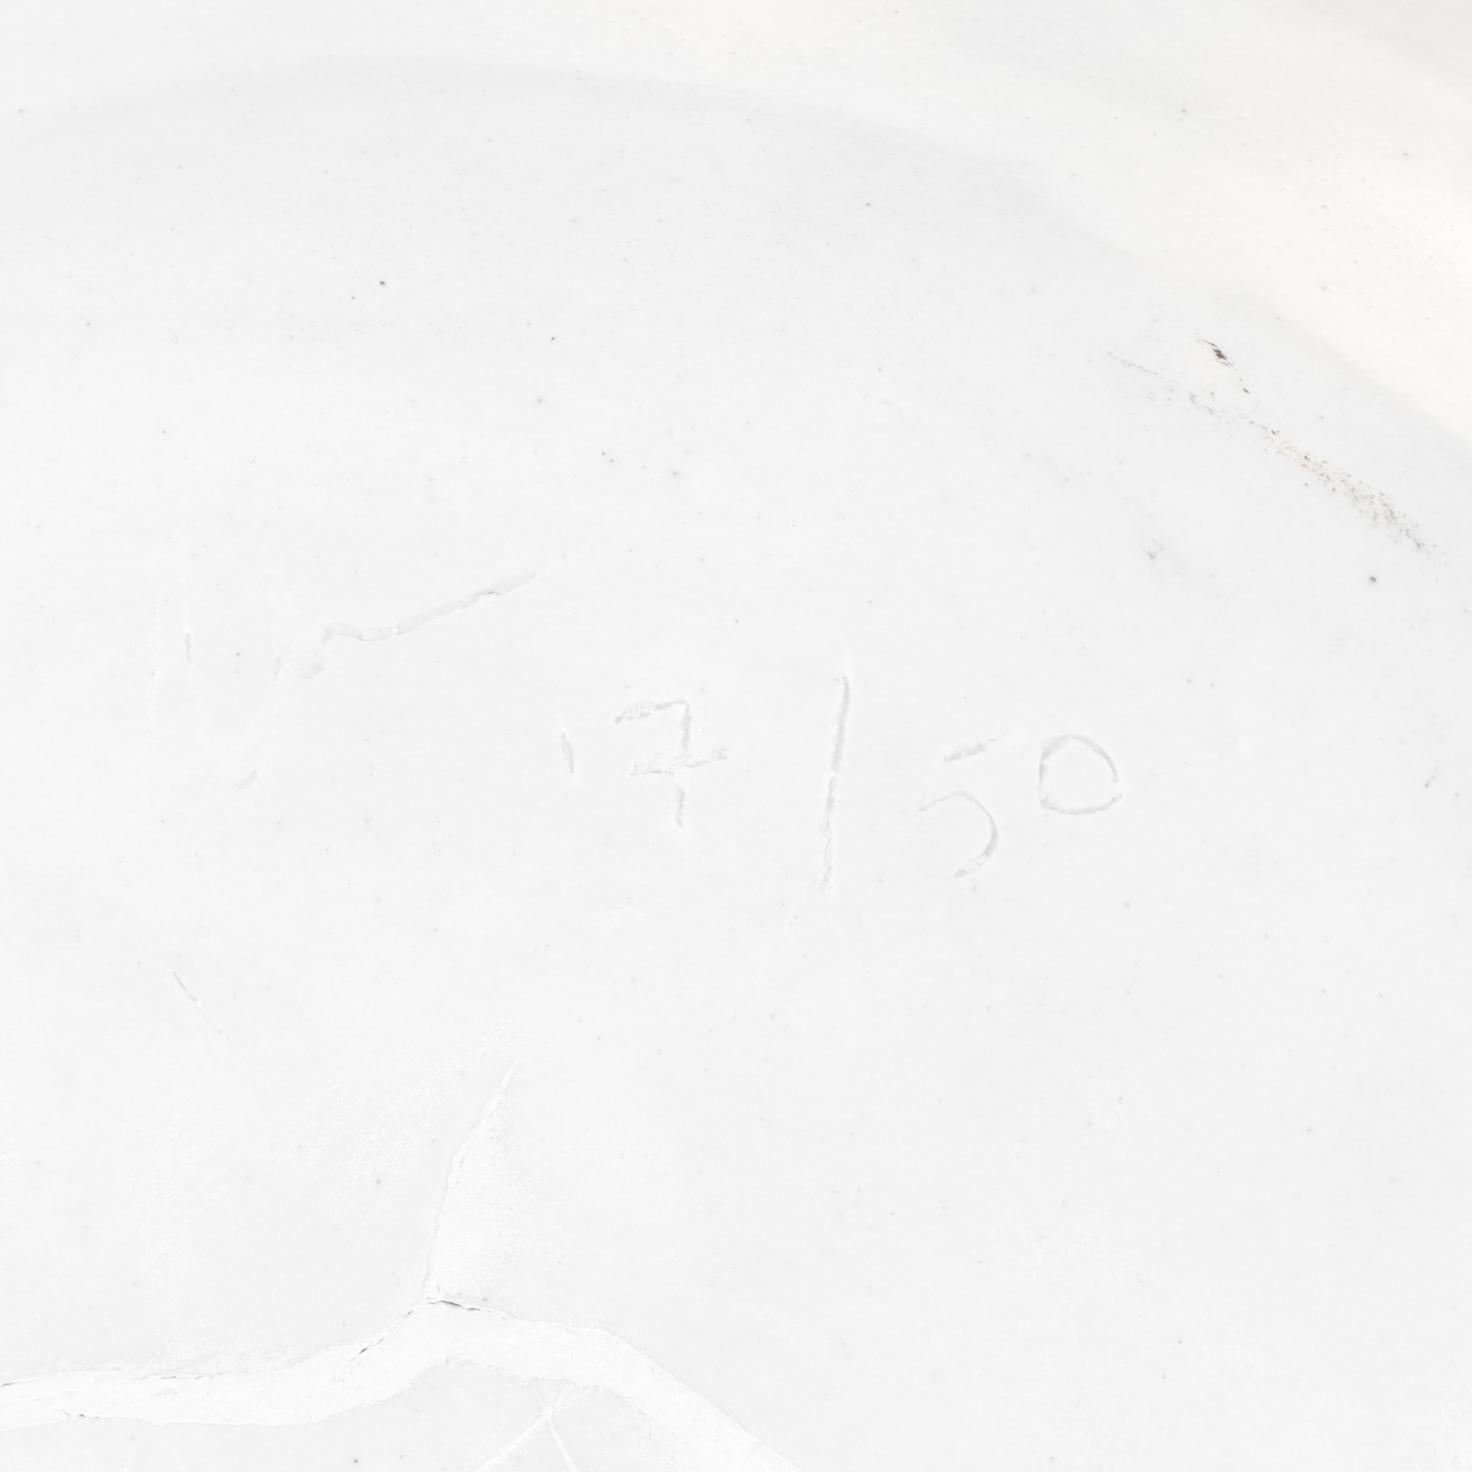 Donna Karan Lenox Signed Limited Edition Embrace Porcelain Vase / Vessel For Sale 5